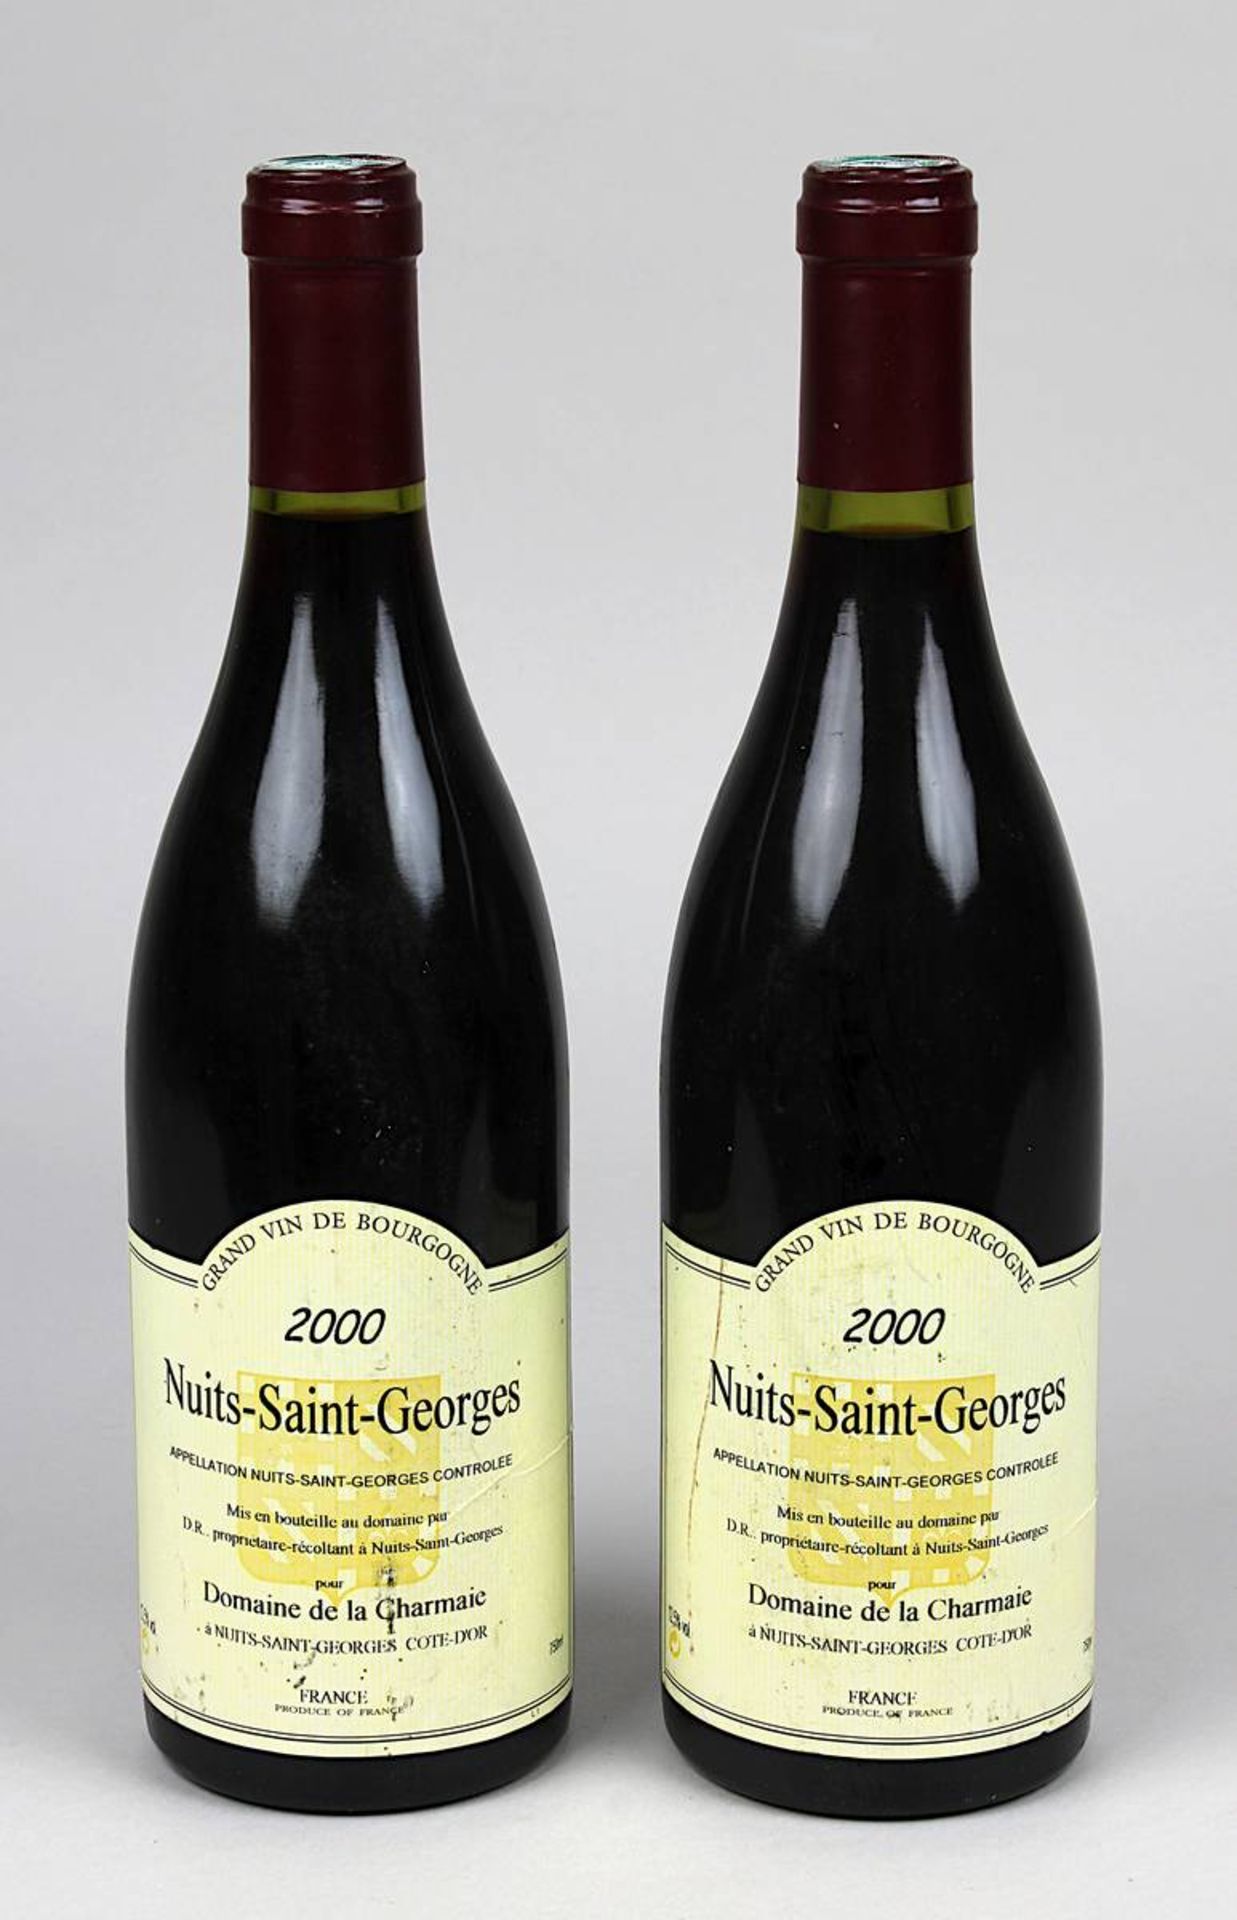 Zwei Flaschen 2000er Nuits-Saint-Georges, Bourgogne, Domaine de la Charmaie, Cote-Dor, gute Füllhöhe